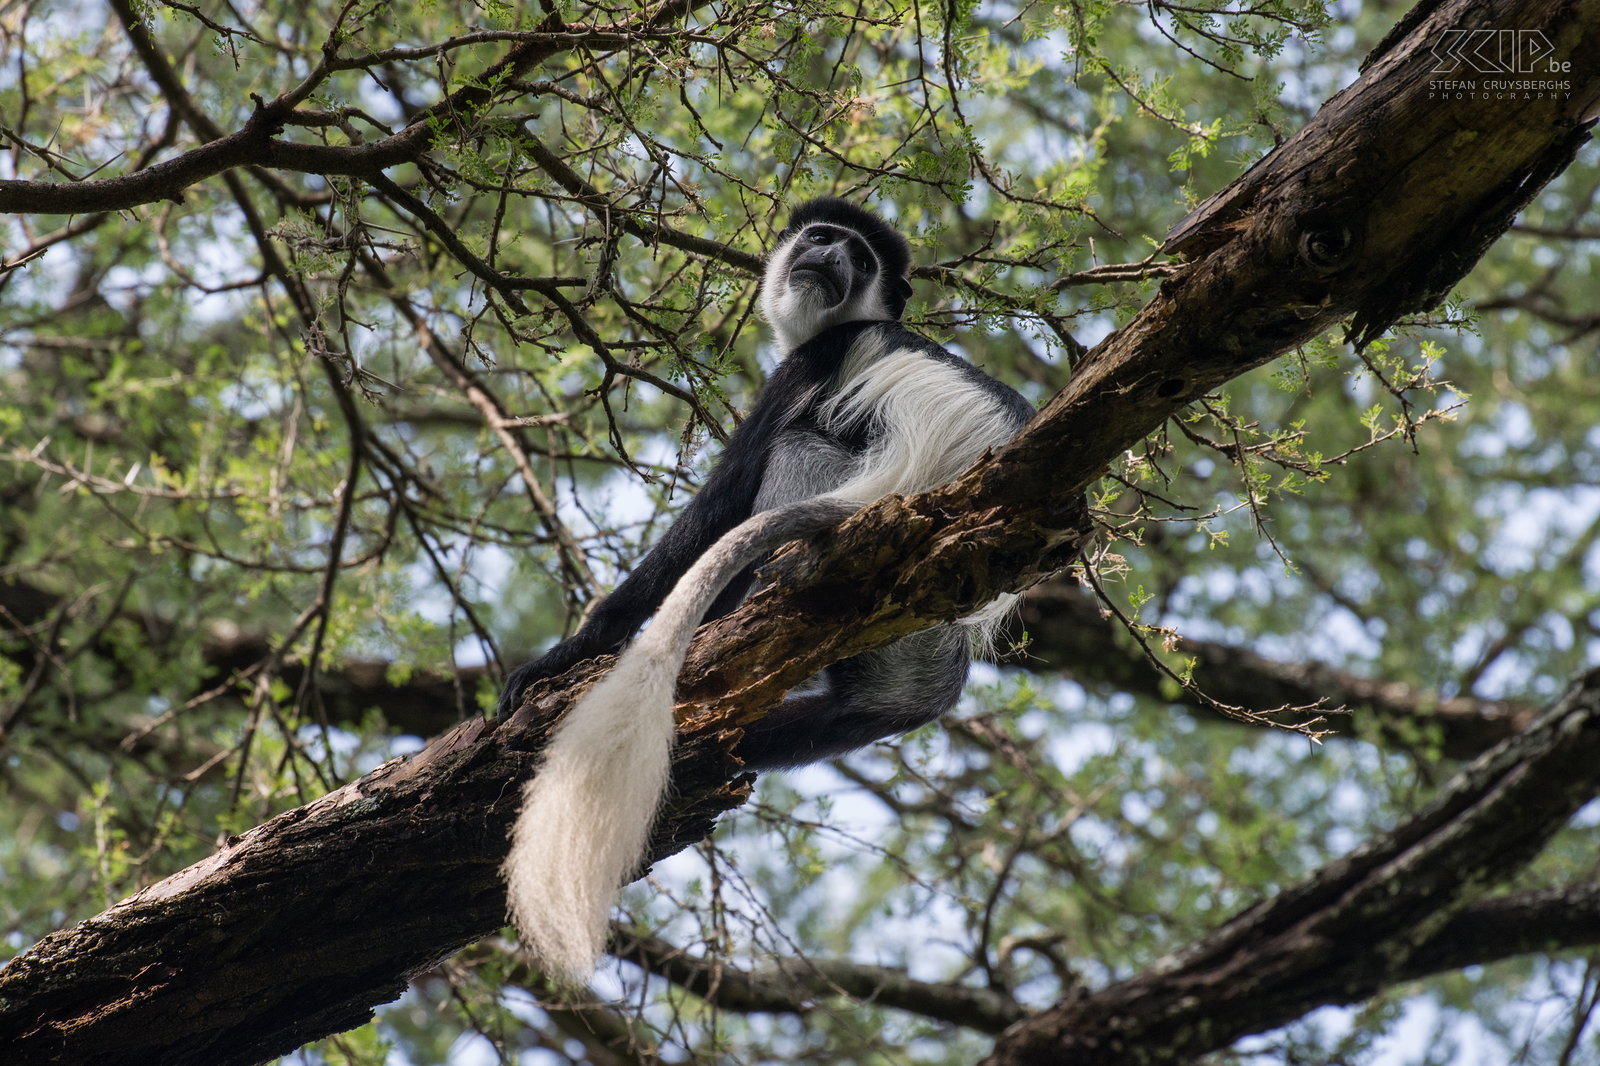 Mago - Colobus aap In de bossen rondom onze kampplaats in Mago NP leven verschillende groepen van zwart-witte colobus apen (franjeaap, bergguereza, Mantled guereza, Colobus guereza). Het is niet altijd gemakkelijk om deze apen te fotograferen omdat ze meestal hoog in de bomen zitten en foto’s zijn vaak vrij donker of met zeer hoge contrasten. Ik hou wel van deze foto omdat er zacht licht was, het toont de aap met z’n prachtige lange witte staart en ik kon er een mooie diagonale compositie van maken.  Stefan Cruysberghs